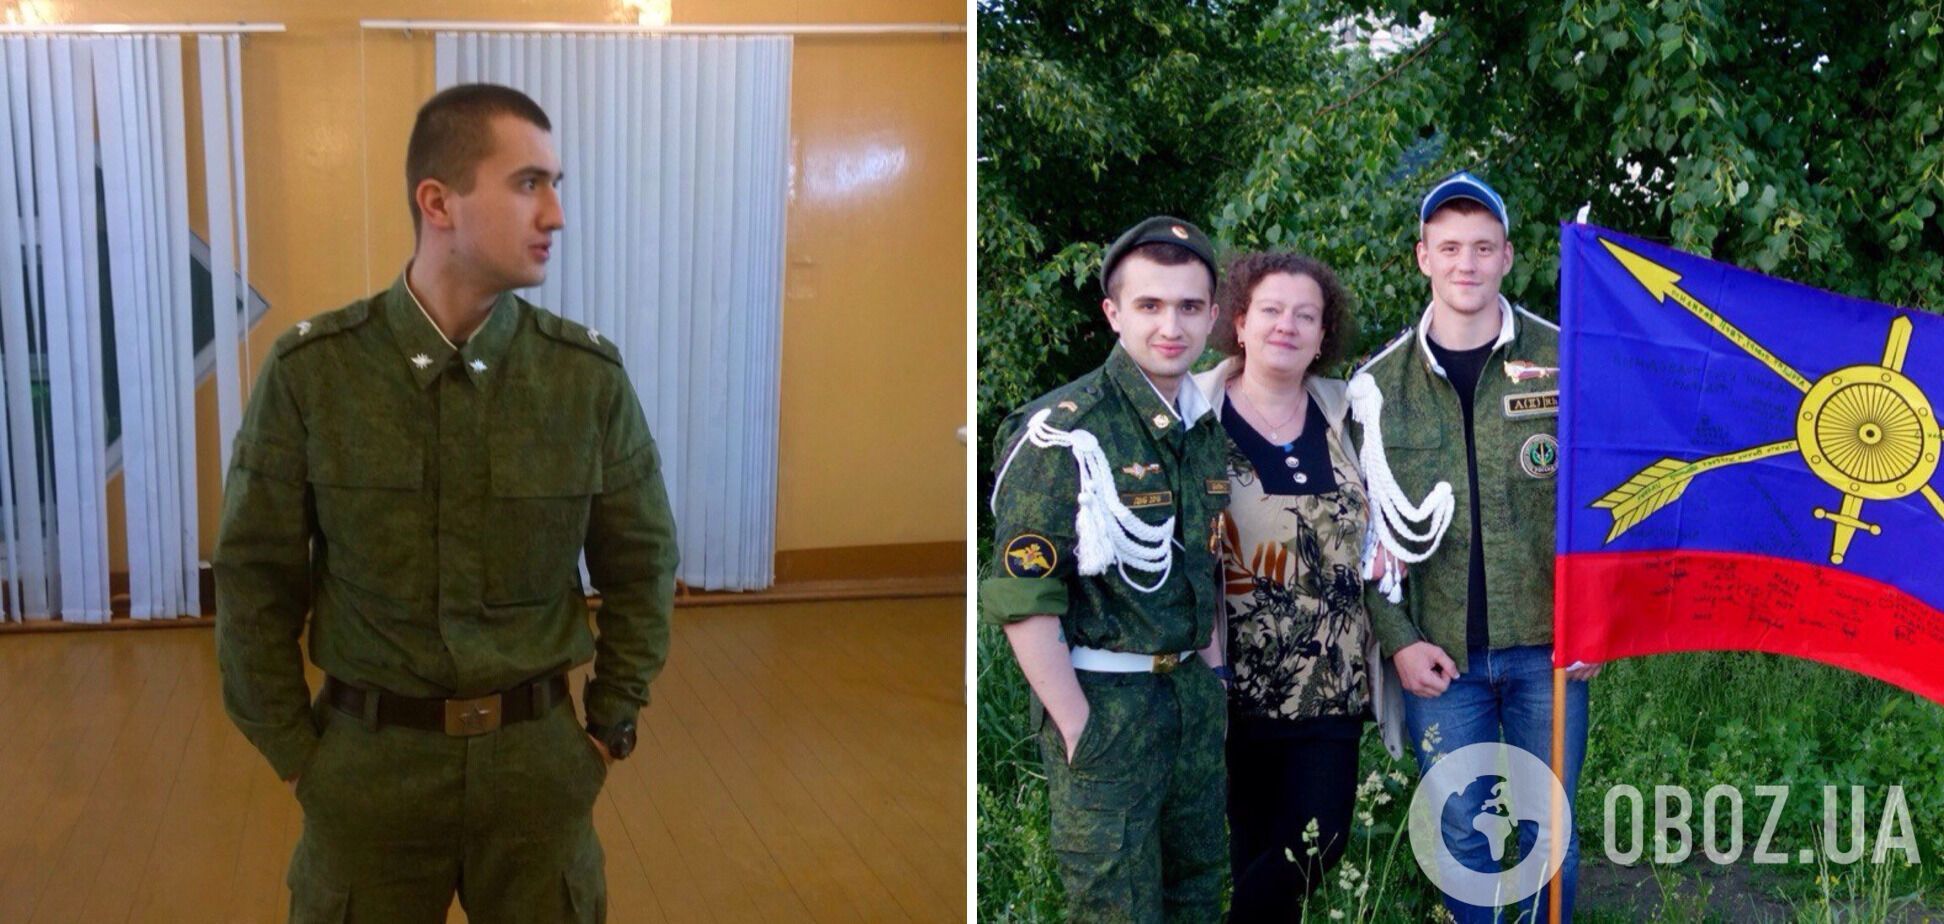 'Случайно' попал на должность: в Украине ликвидировали оккупанта-командира артустановки. Фото